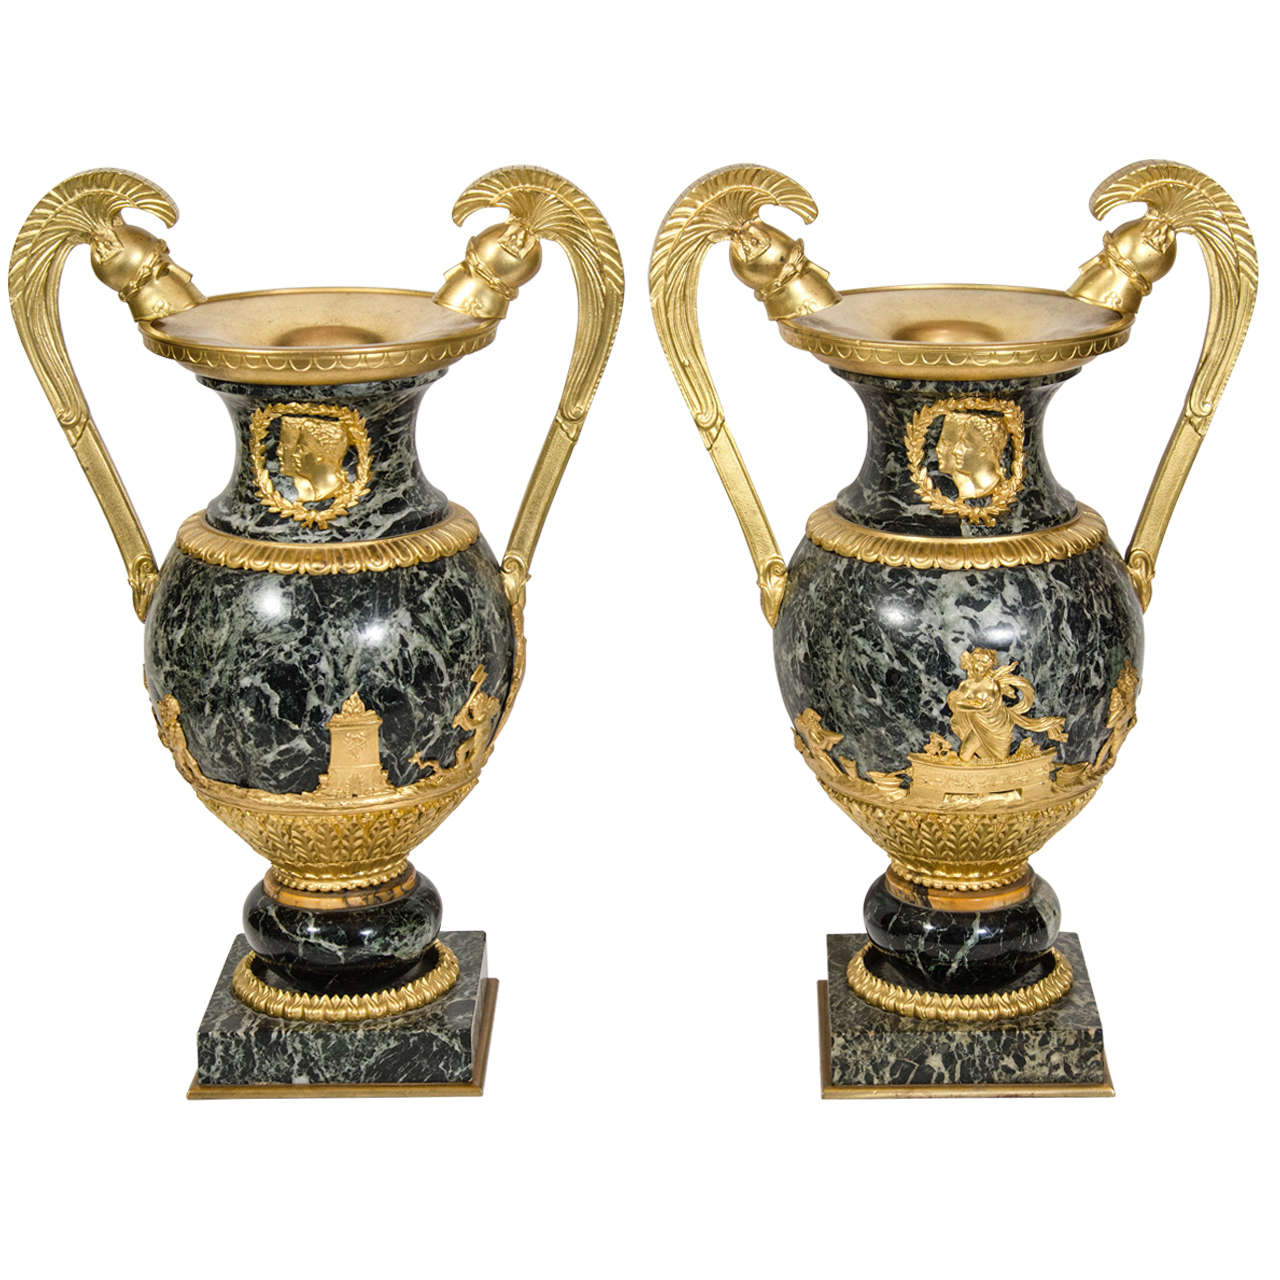 Paire d'urnes militaires anciennes de style Empire français en bronze doré et marbre vert